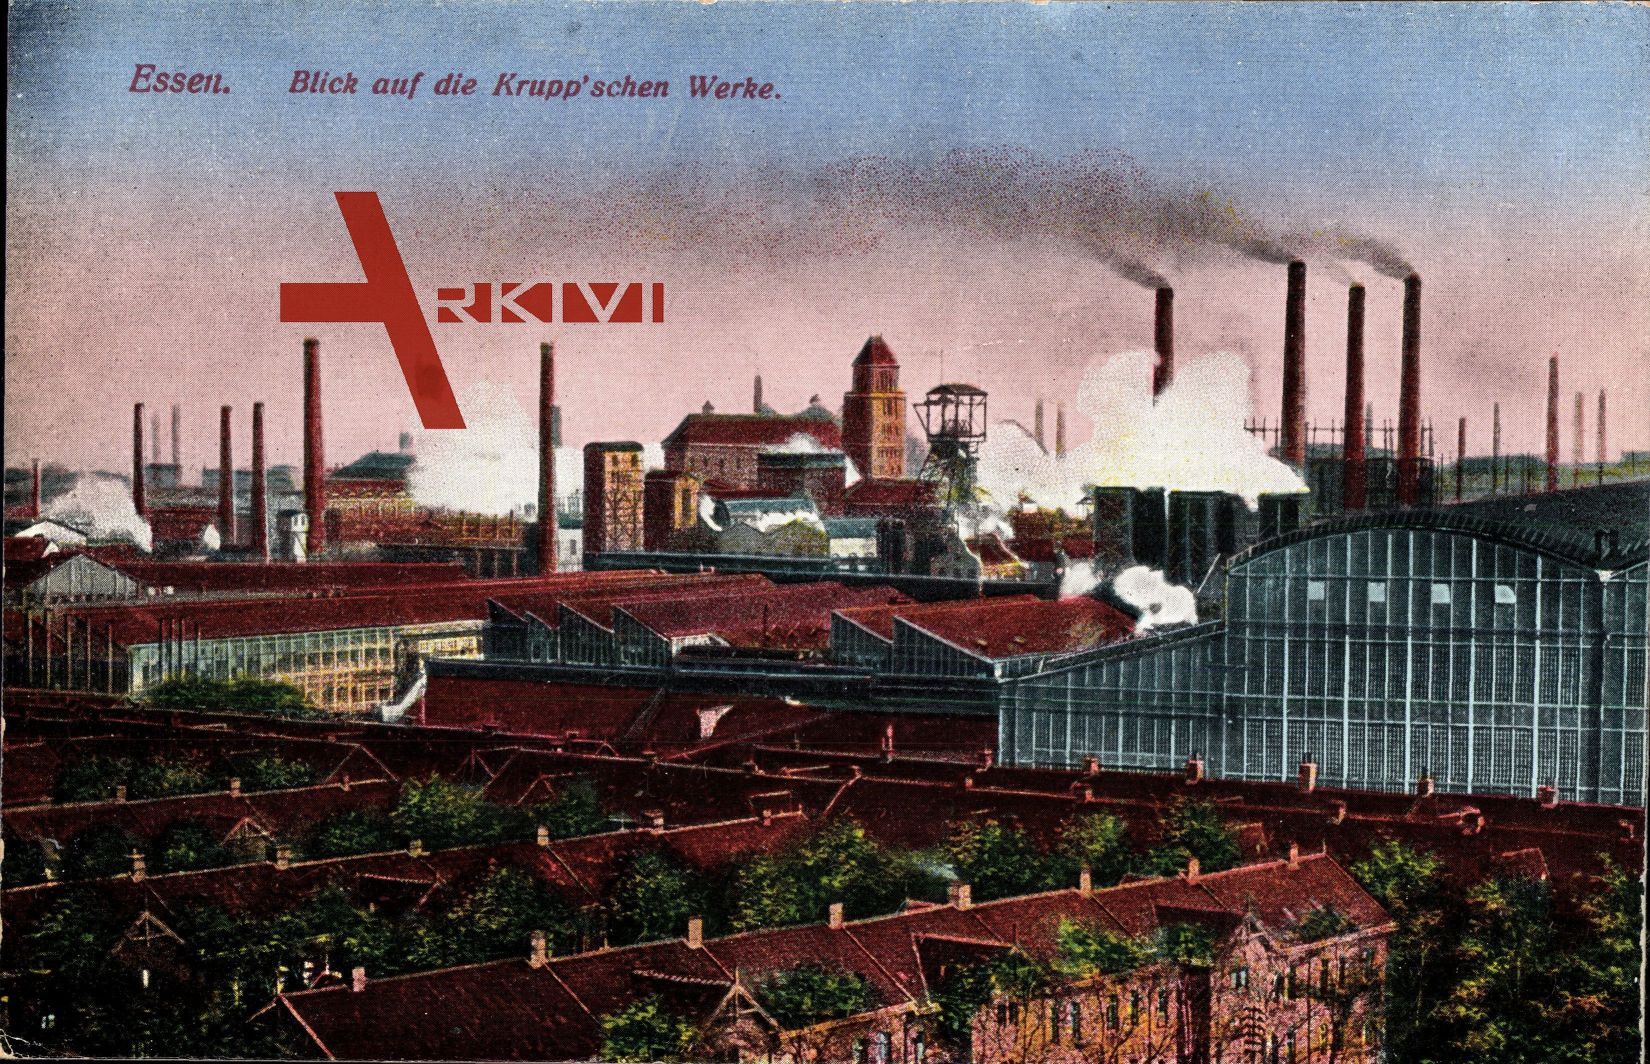 Essen im Ruhrgebiet, Blick auf die Kruppschen Werke